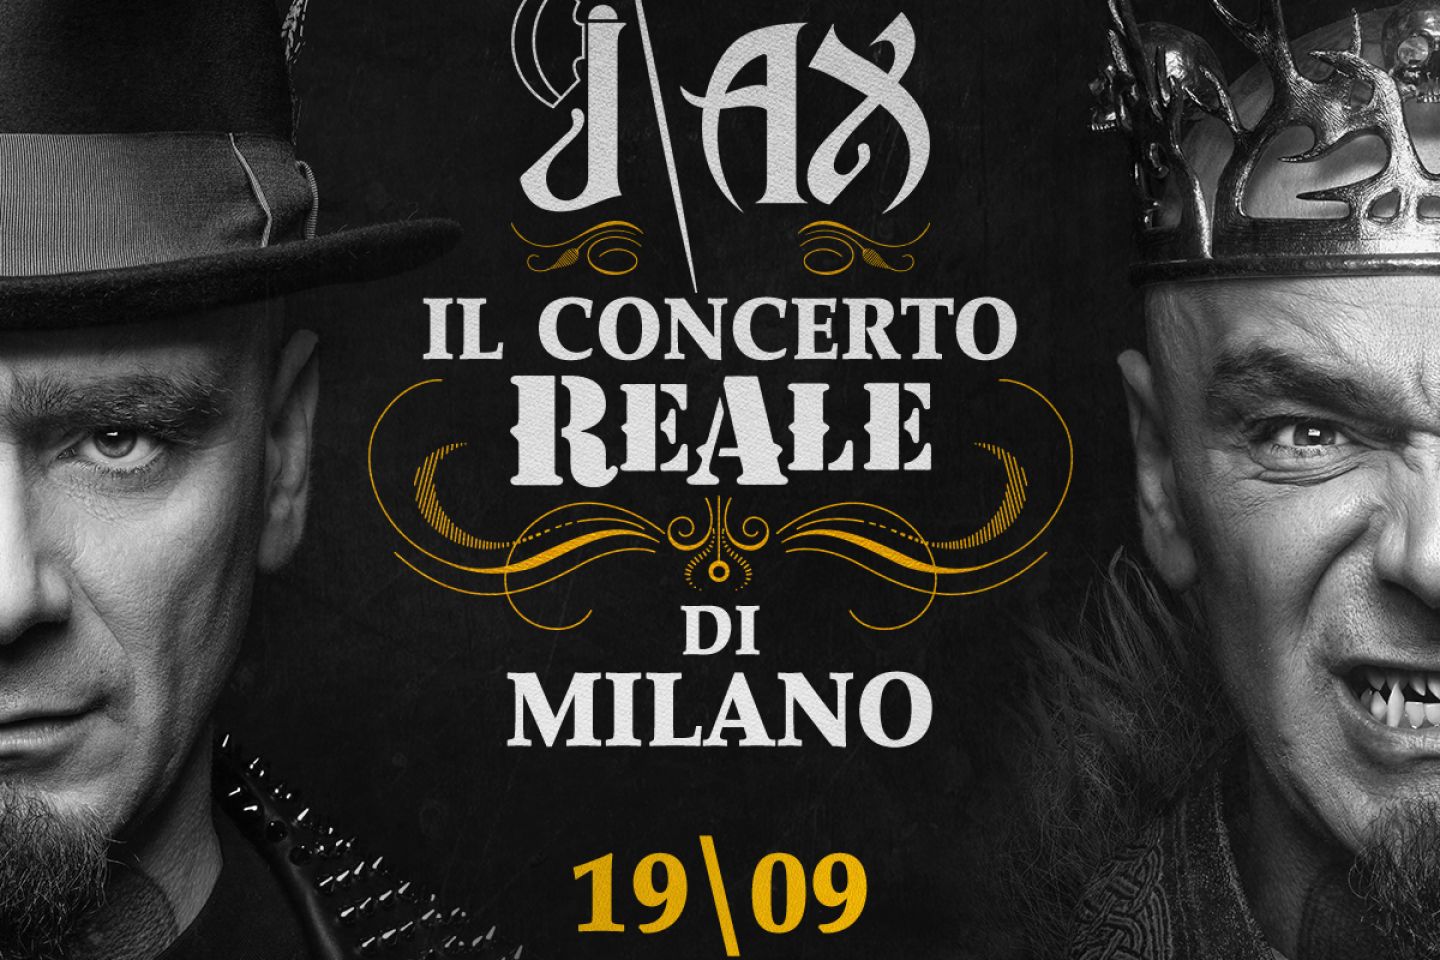 J-AX – Vivo Concerti annuncia il concerto ReAle di Milano! Sabato 19 settembre 2020 @ Mediolanum Forum di Assago, Milano